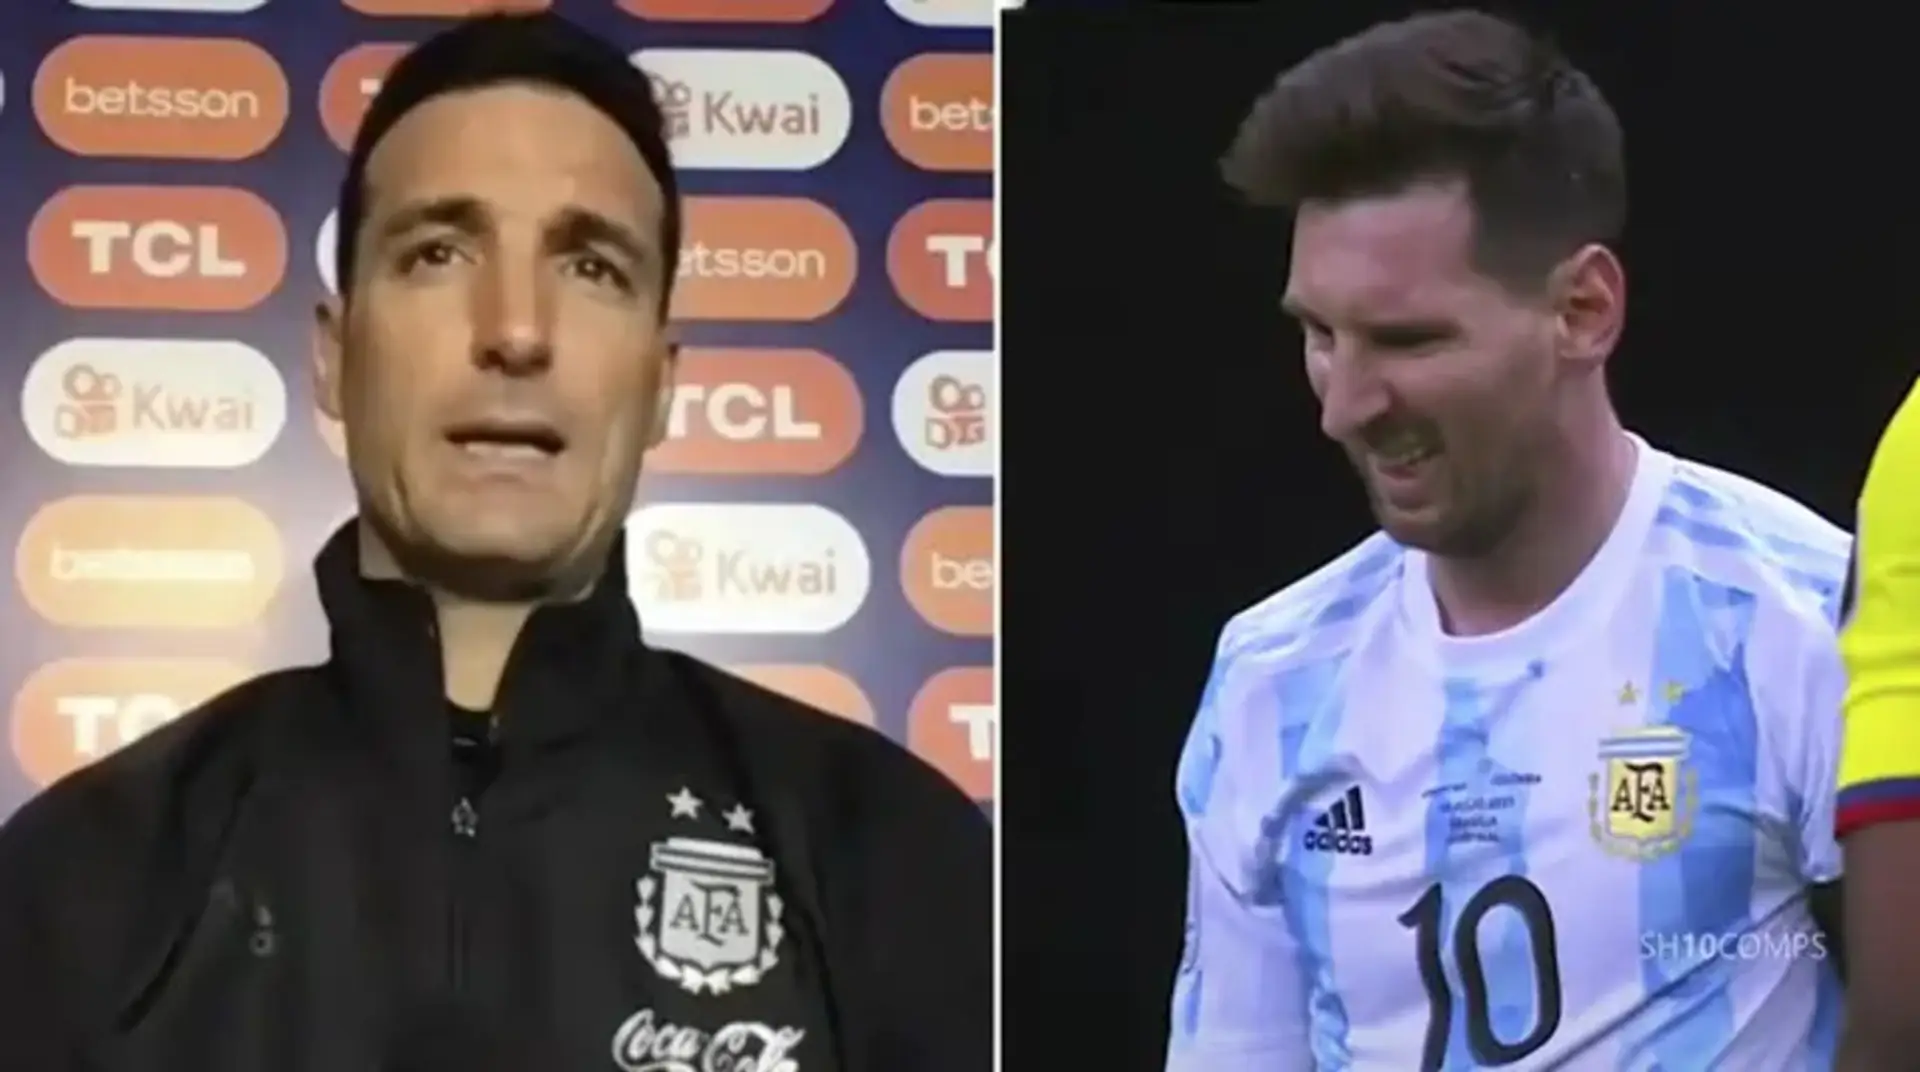 El técnico argentino Scaloni revela que Messi jugó 2 partidos de la Copa América con una lesión